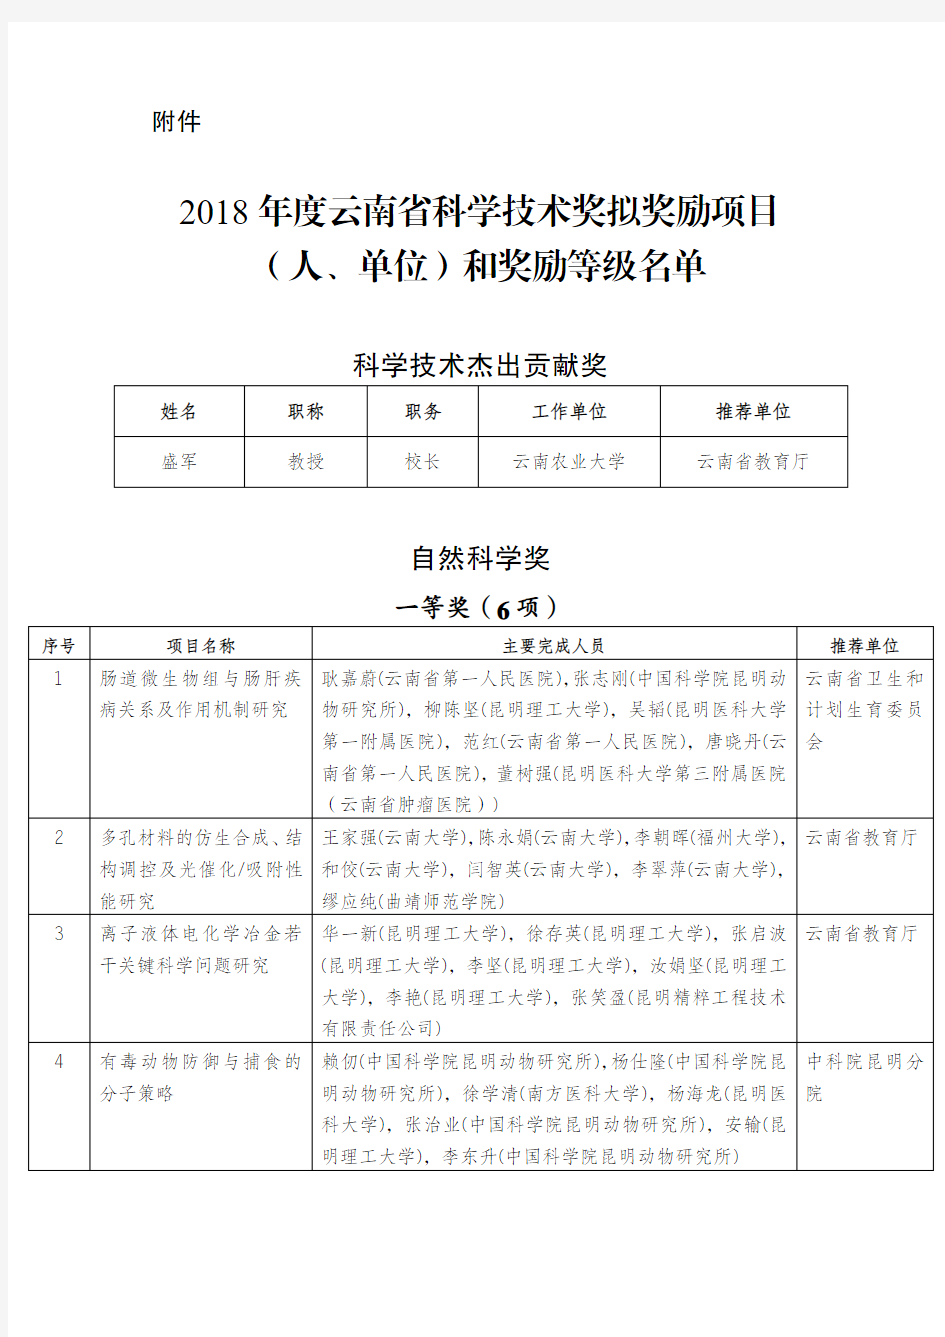 2018年度云南省科学技术奖拟奖励项目(人、单位)和奖励